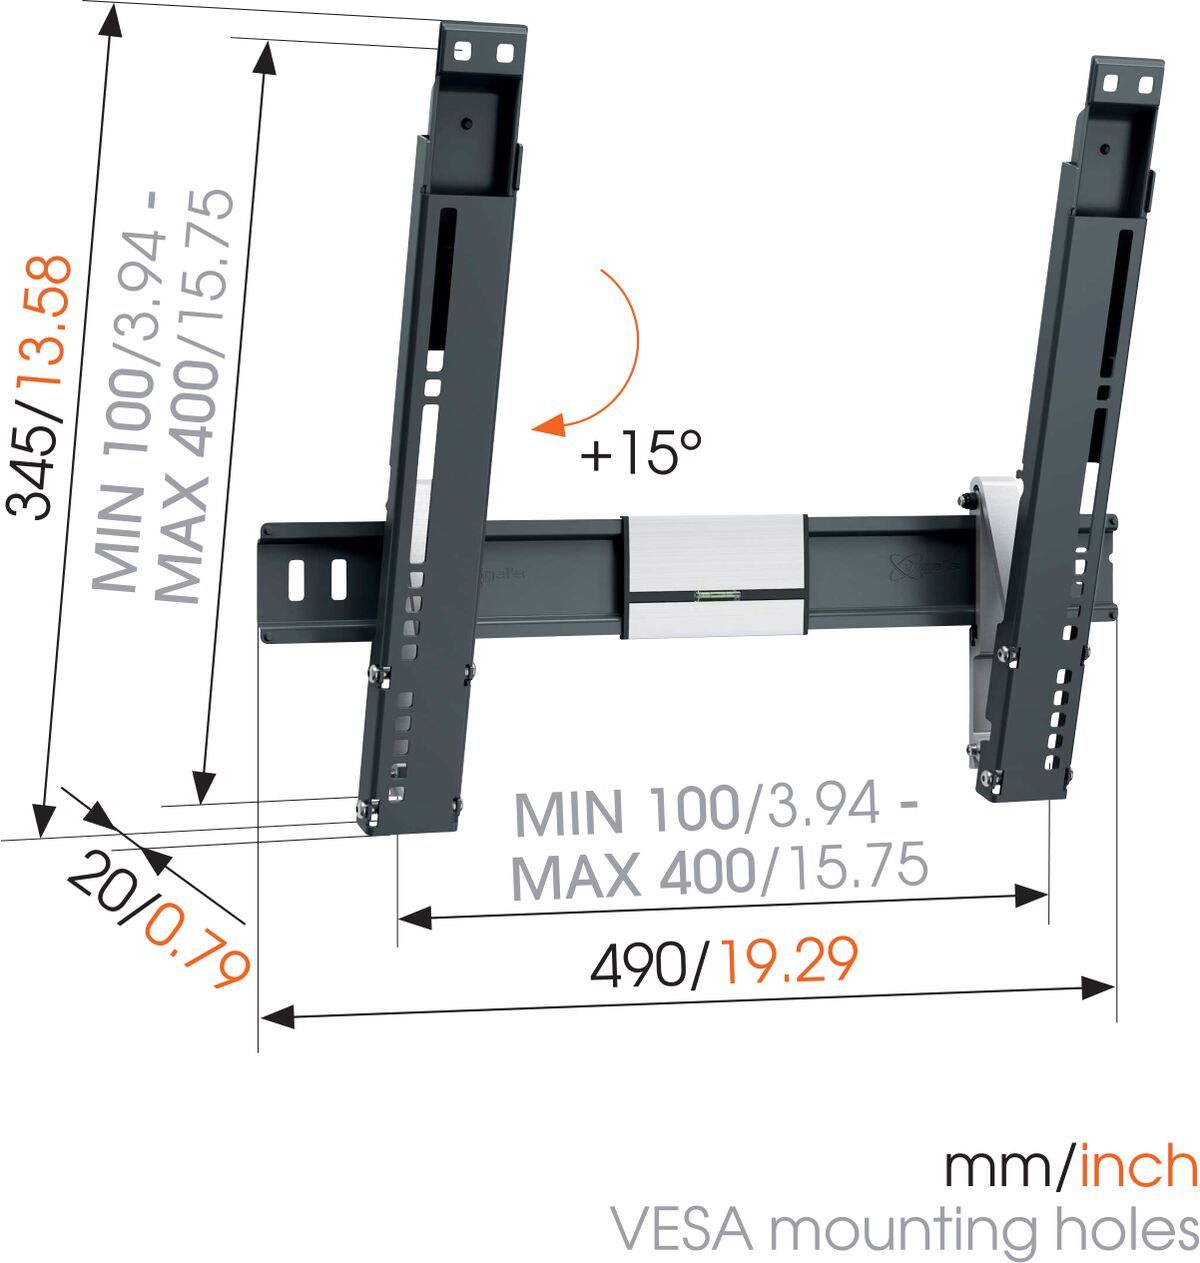 VOGELS ExtraTHIN 415 - neigbare Wandhalterung für Displays von 26 bis 55 Zoll - VESA 400x400mm - bis 18kg - Schwarz